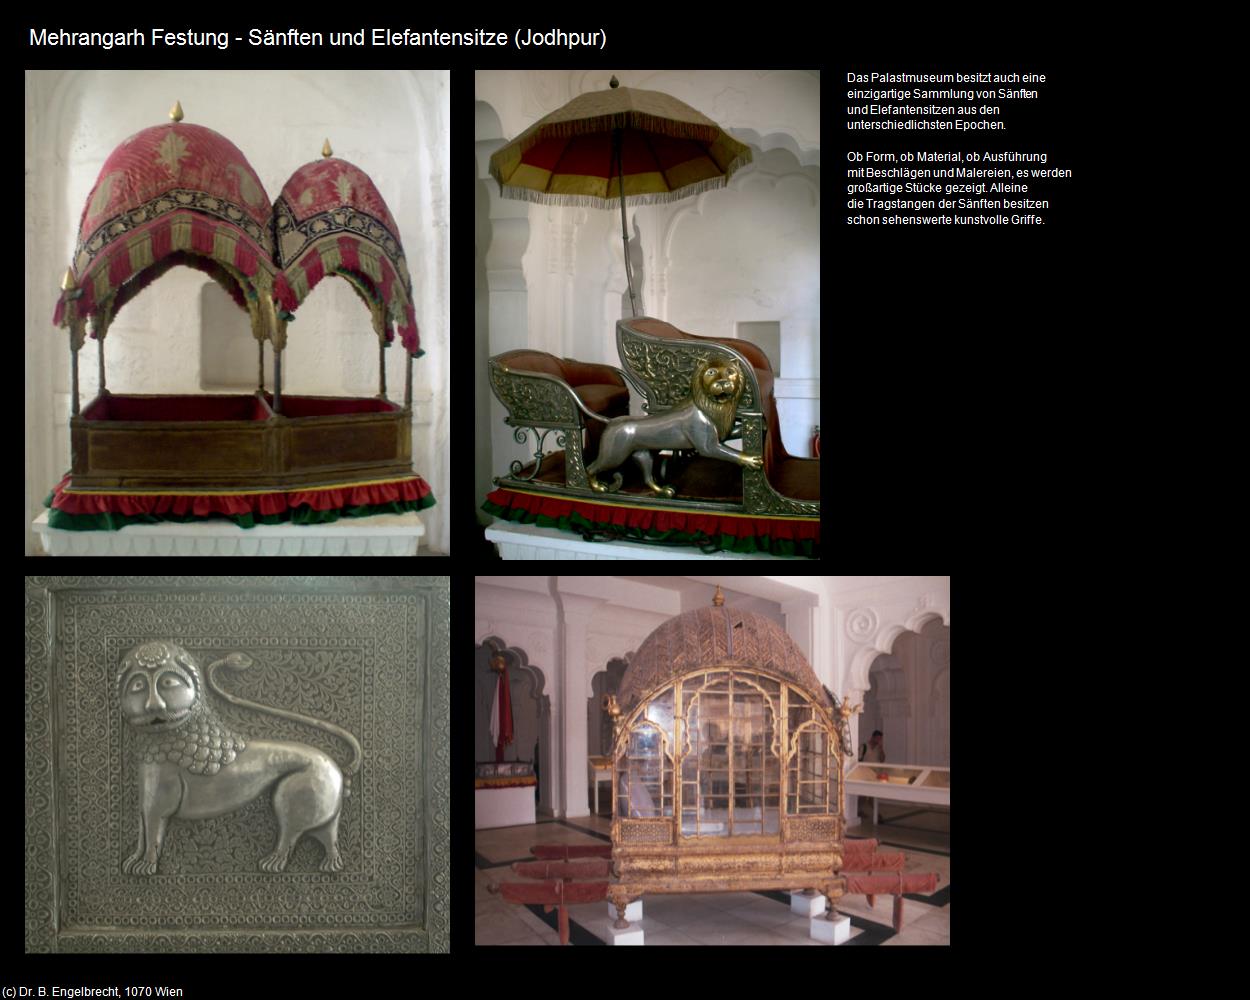 Mehrangarh Festung-Sänften und Elefantensitze (Jodhpur) in Rajasthan - das Land der Könige